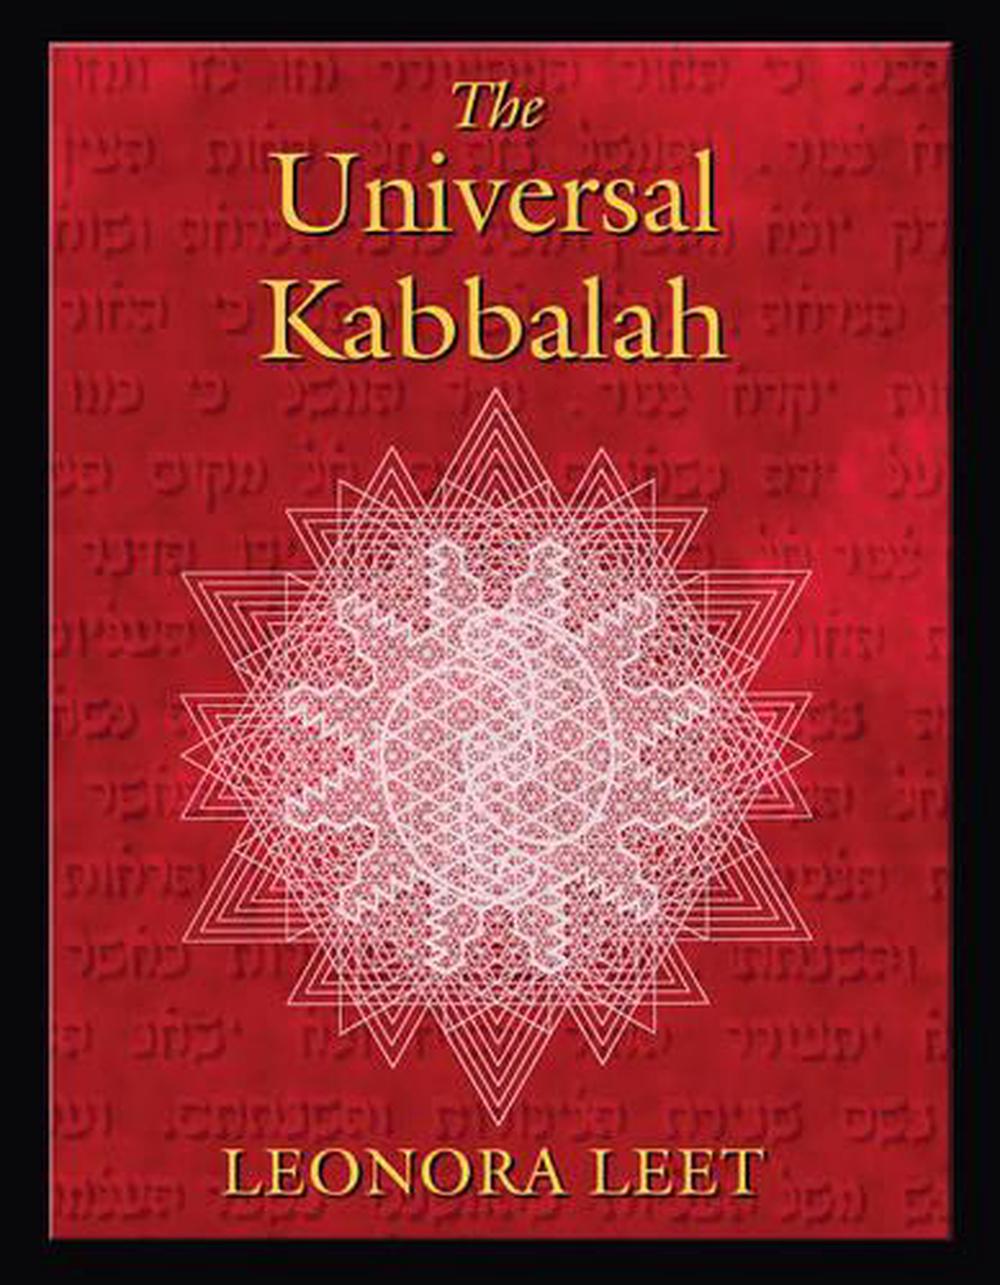 The Power of Kabbalah by Yehuda Berg